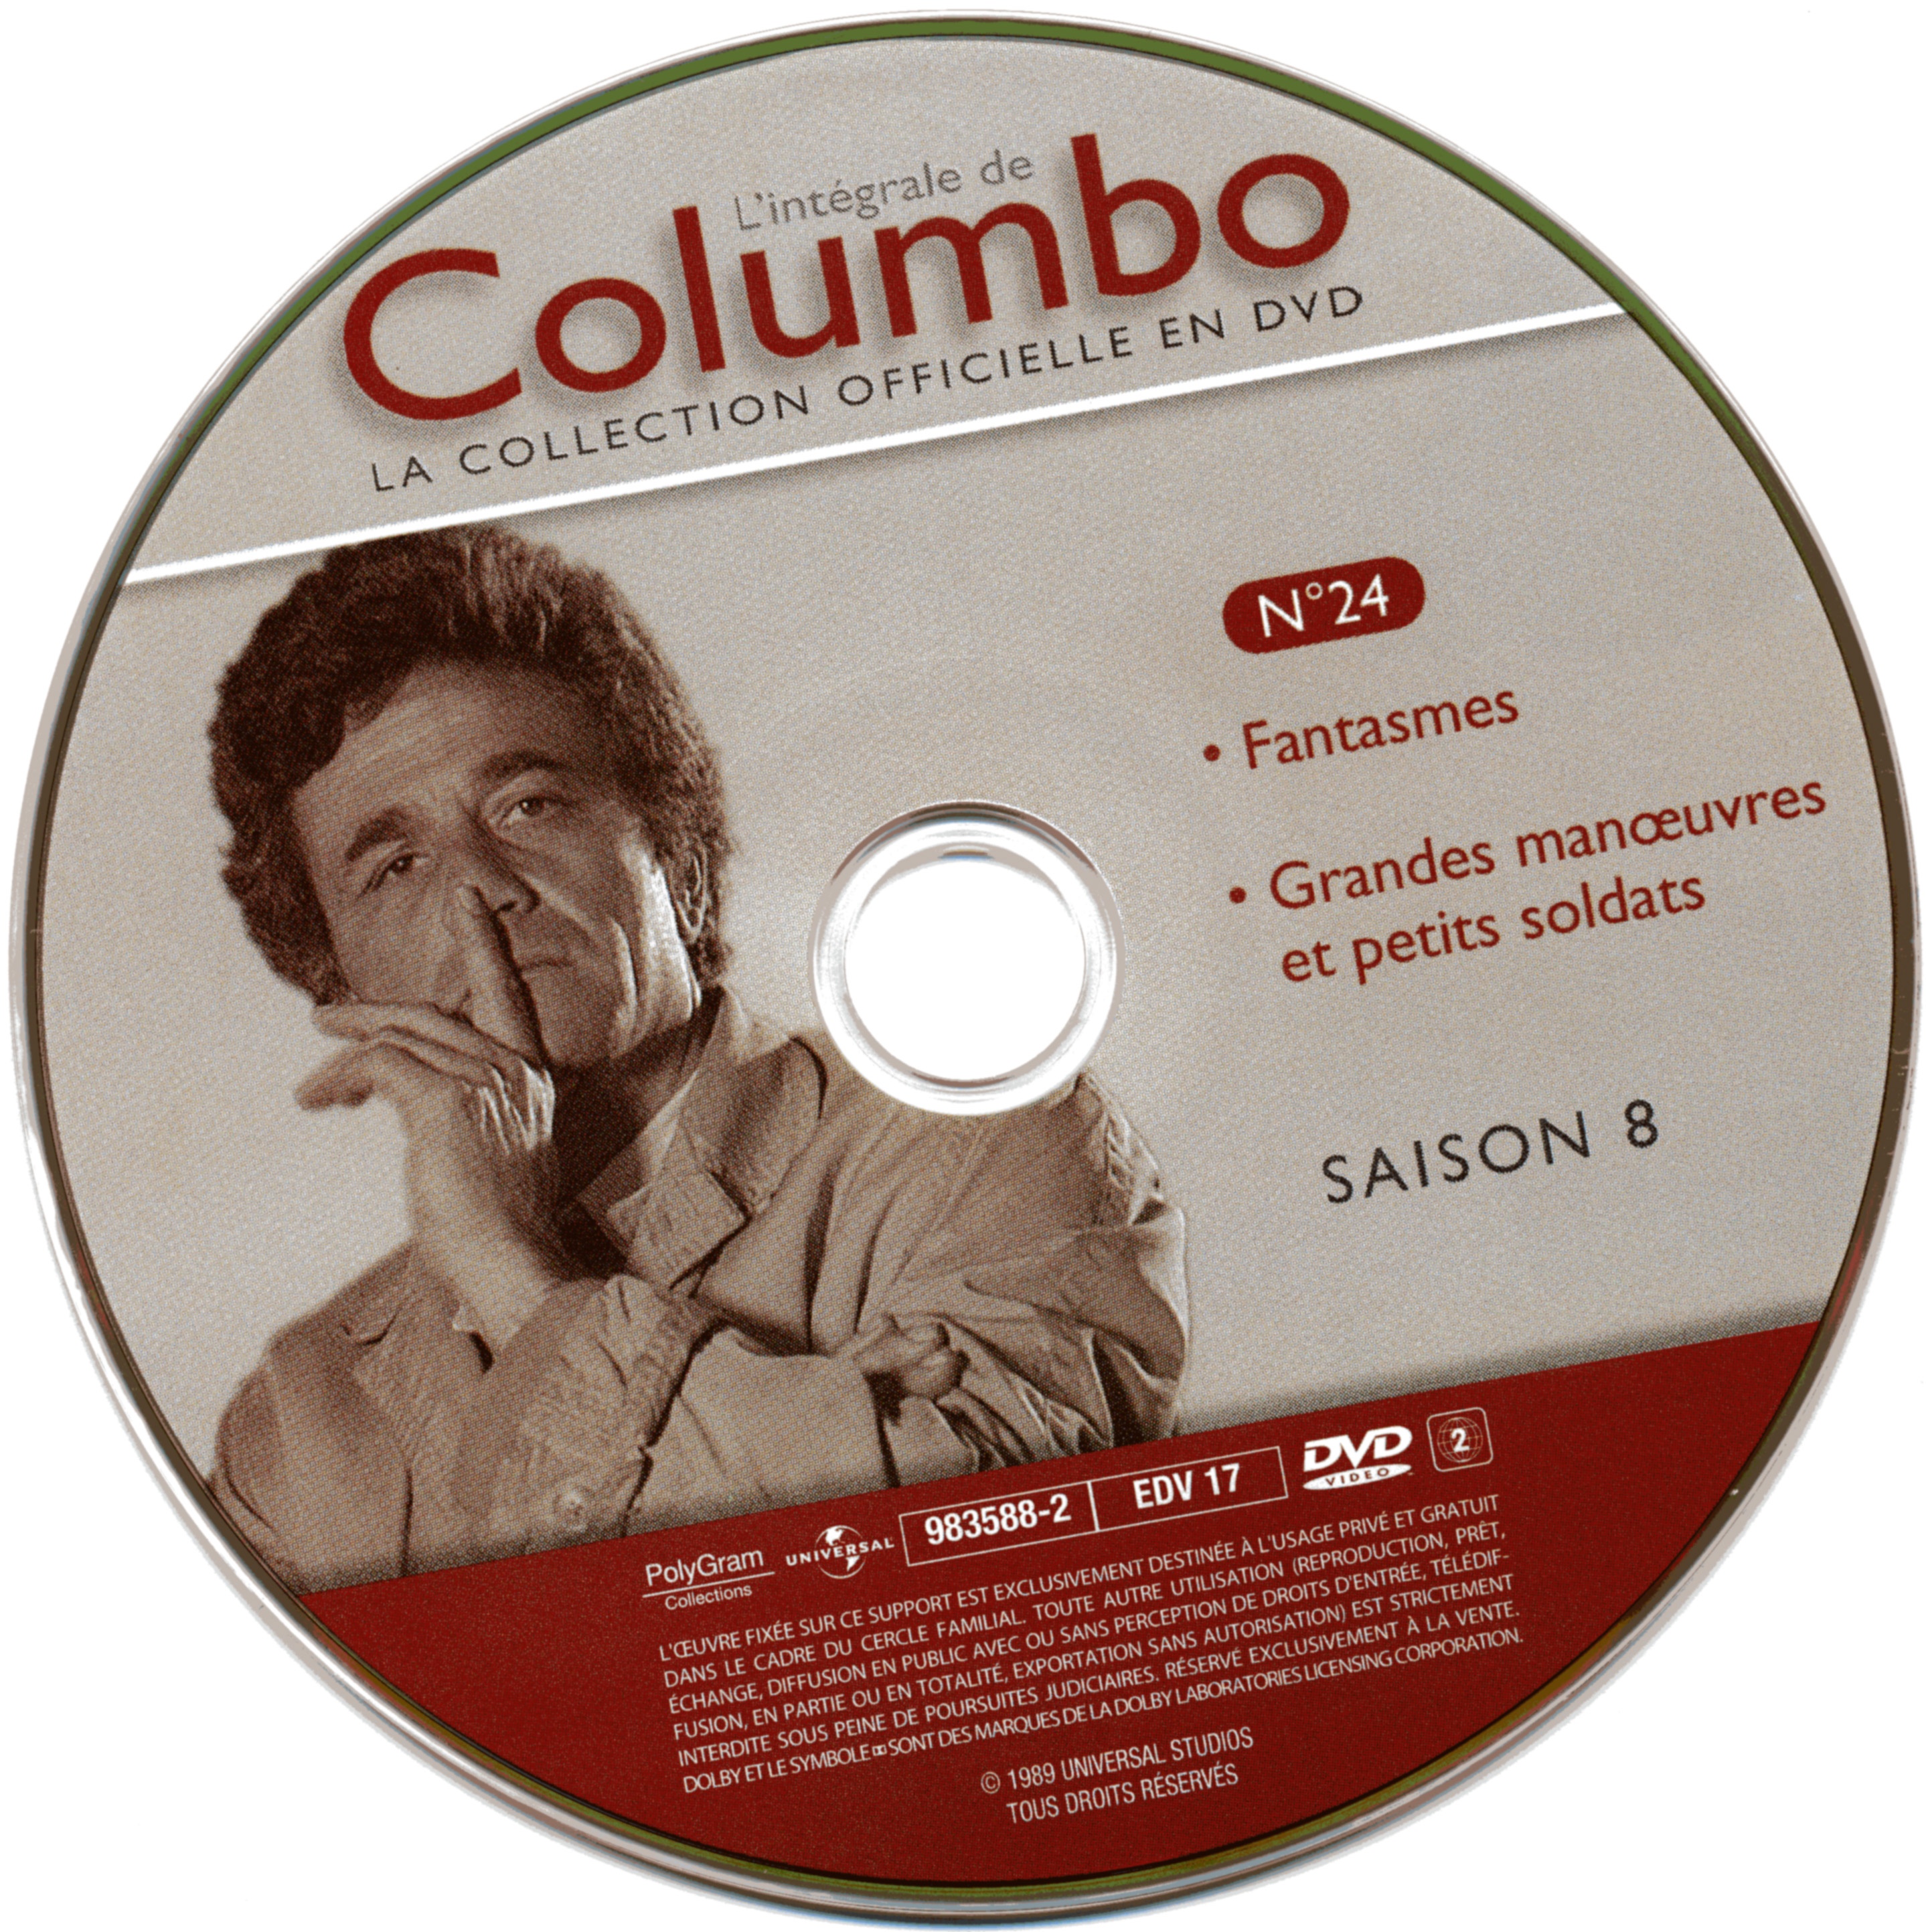 Columbo saison 8 vol 24